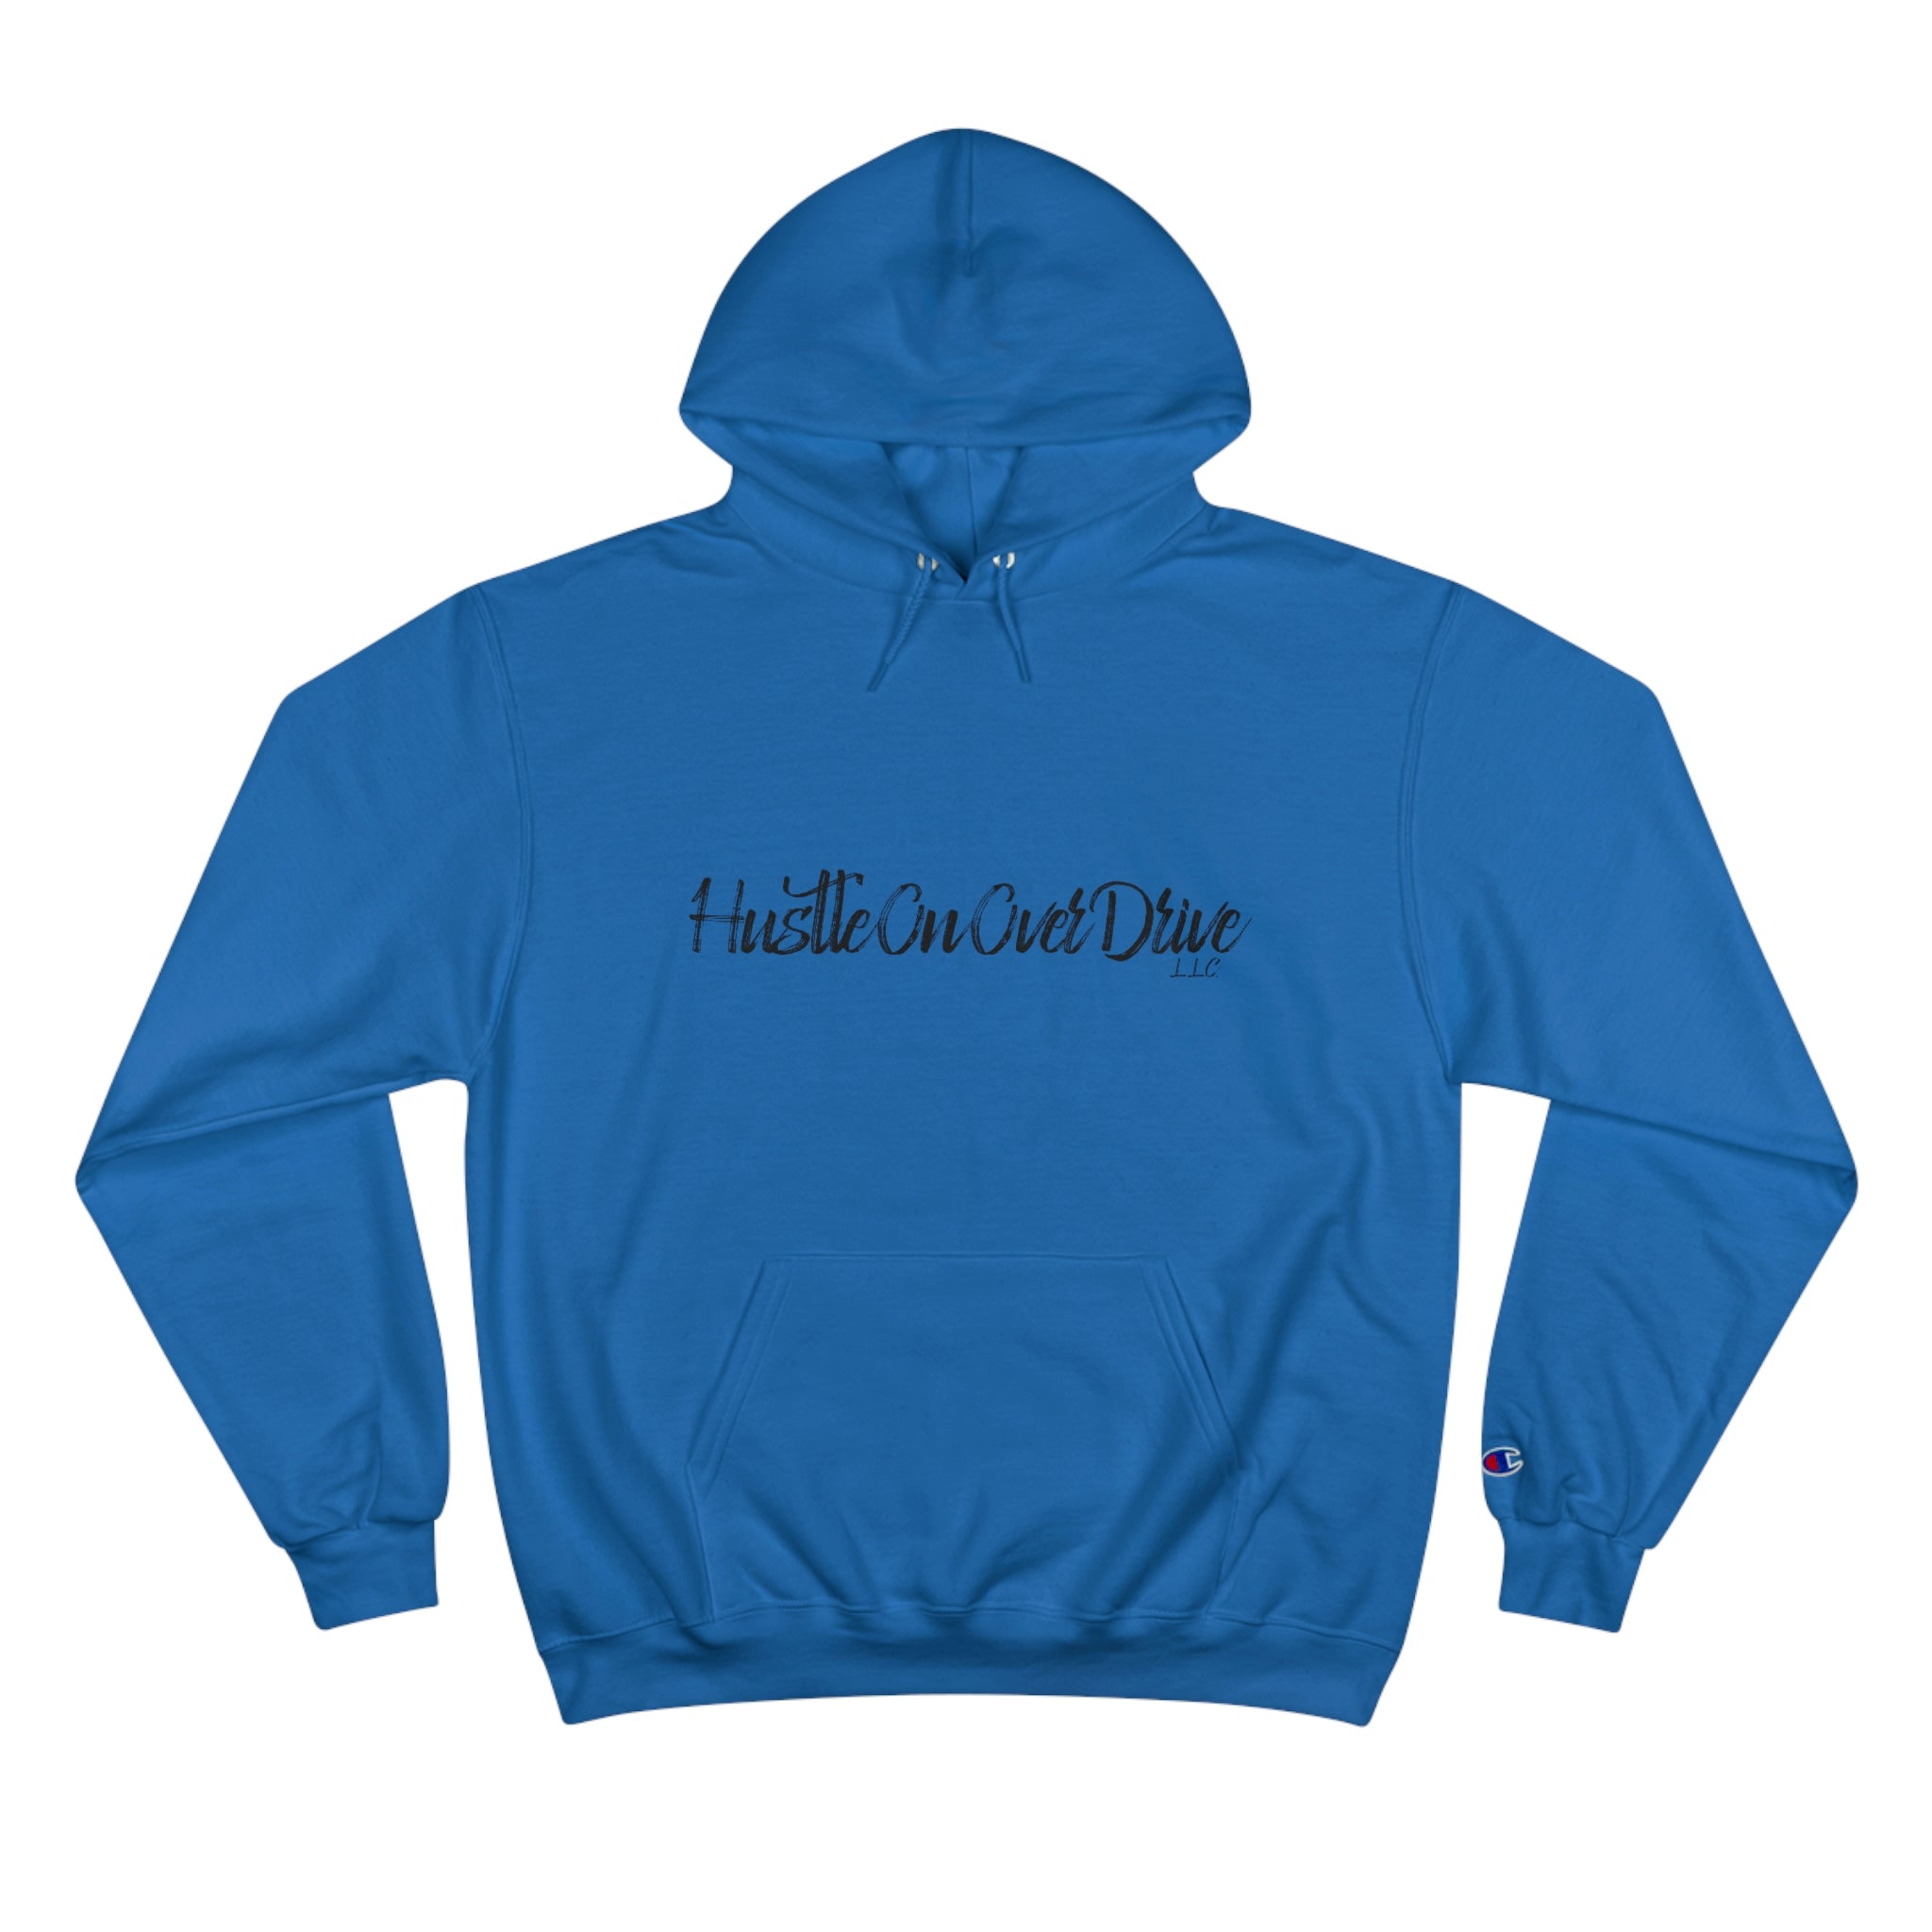 HustleOnOverDrive Hoodie